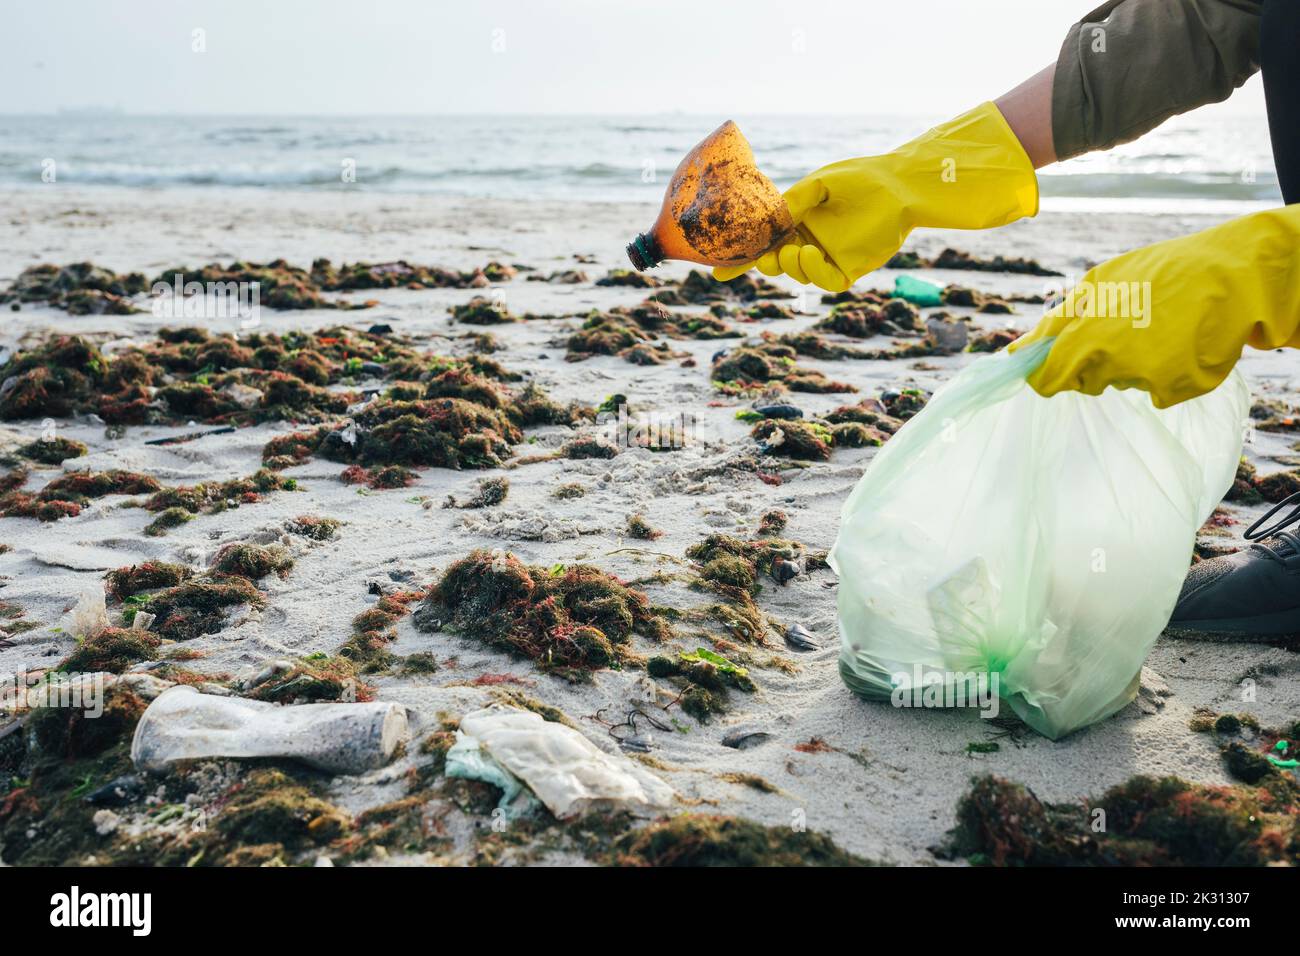 Hände einer Frau, die am Strand Plastikflaschen in einem Müllbeutel sammelt Stockfoto